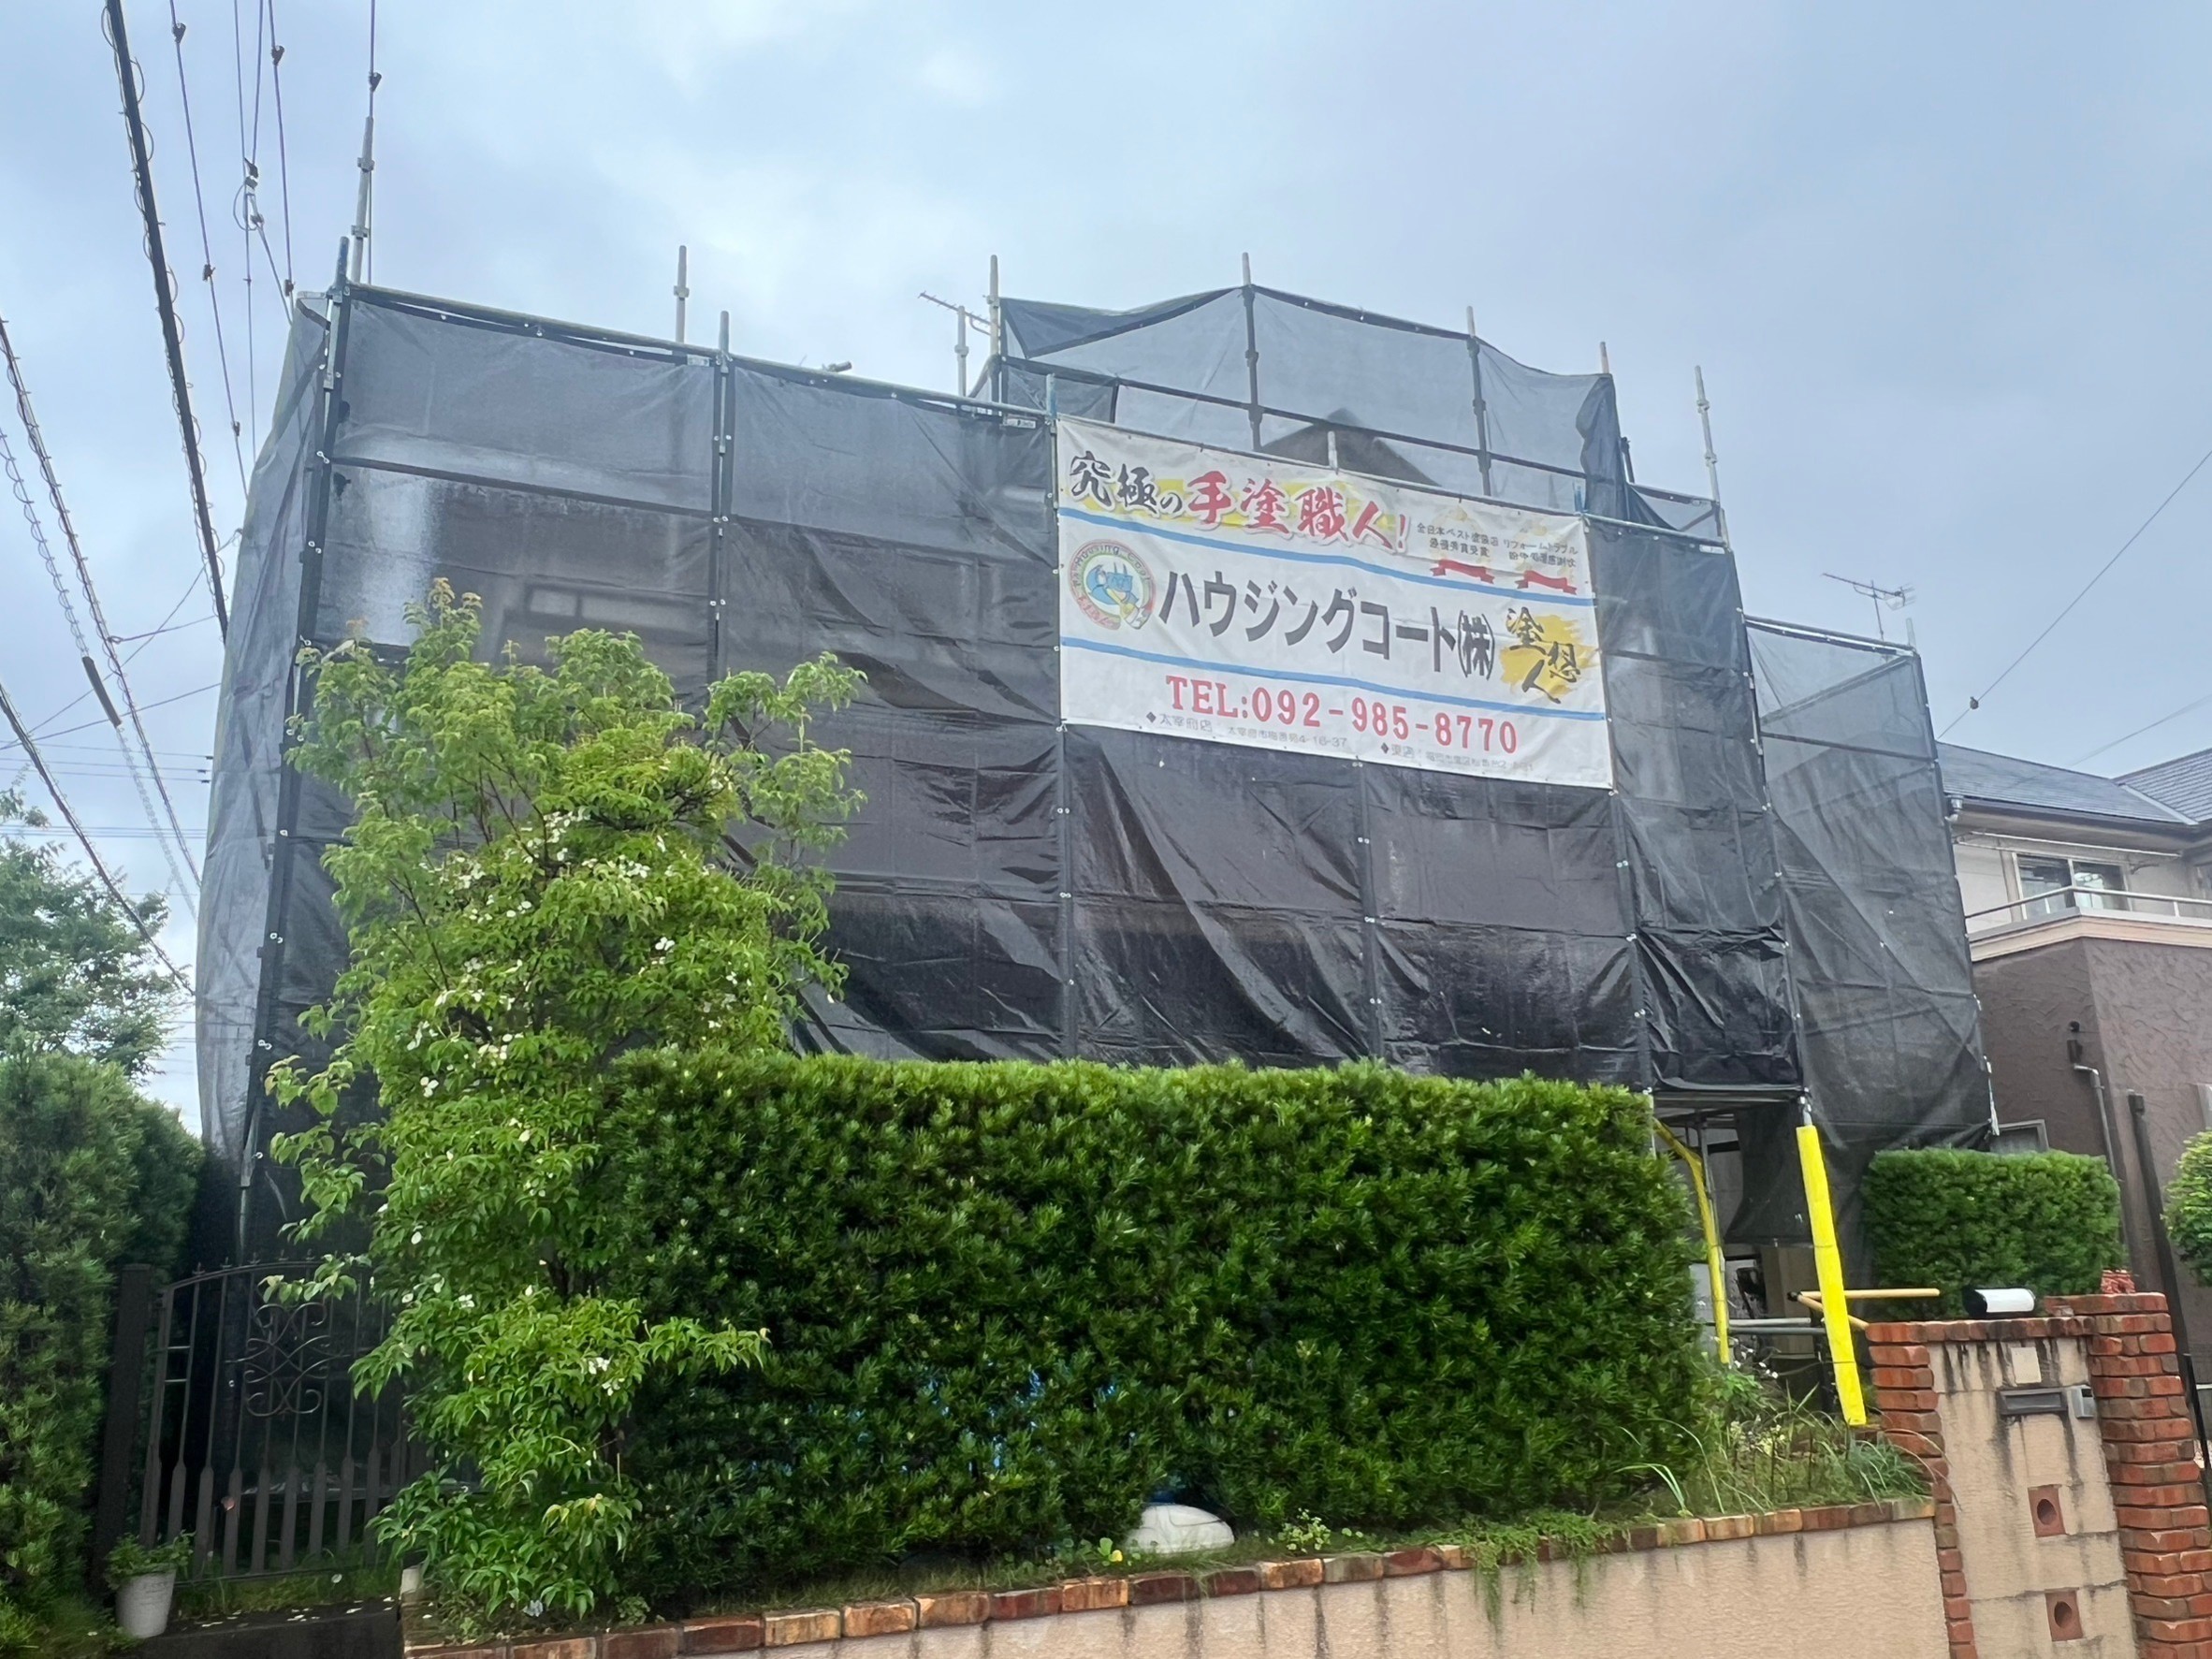 福岡県小郡市美鈴の杜のI様邸で実績のあるシリコン塗料を使用して屋根と外壁の塗装を行っています。7/7着工です。【ホームページより】